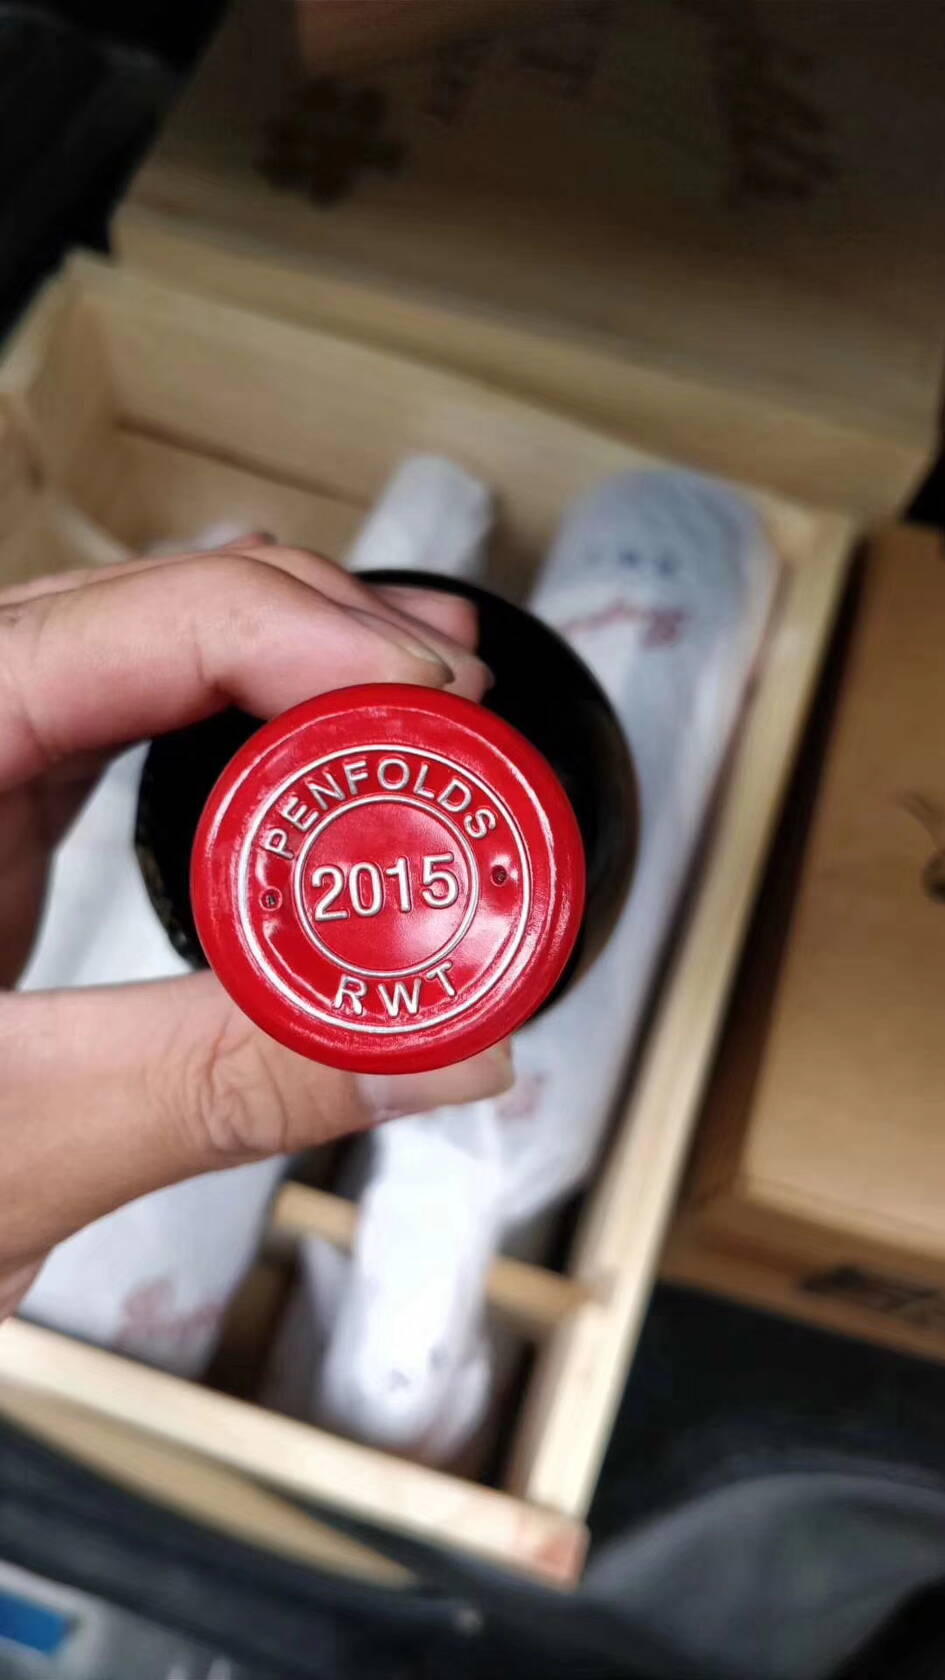 2018年奔富红酒品牌珍藏系列新年份核心产品